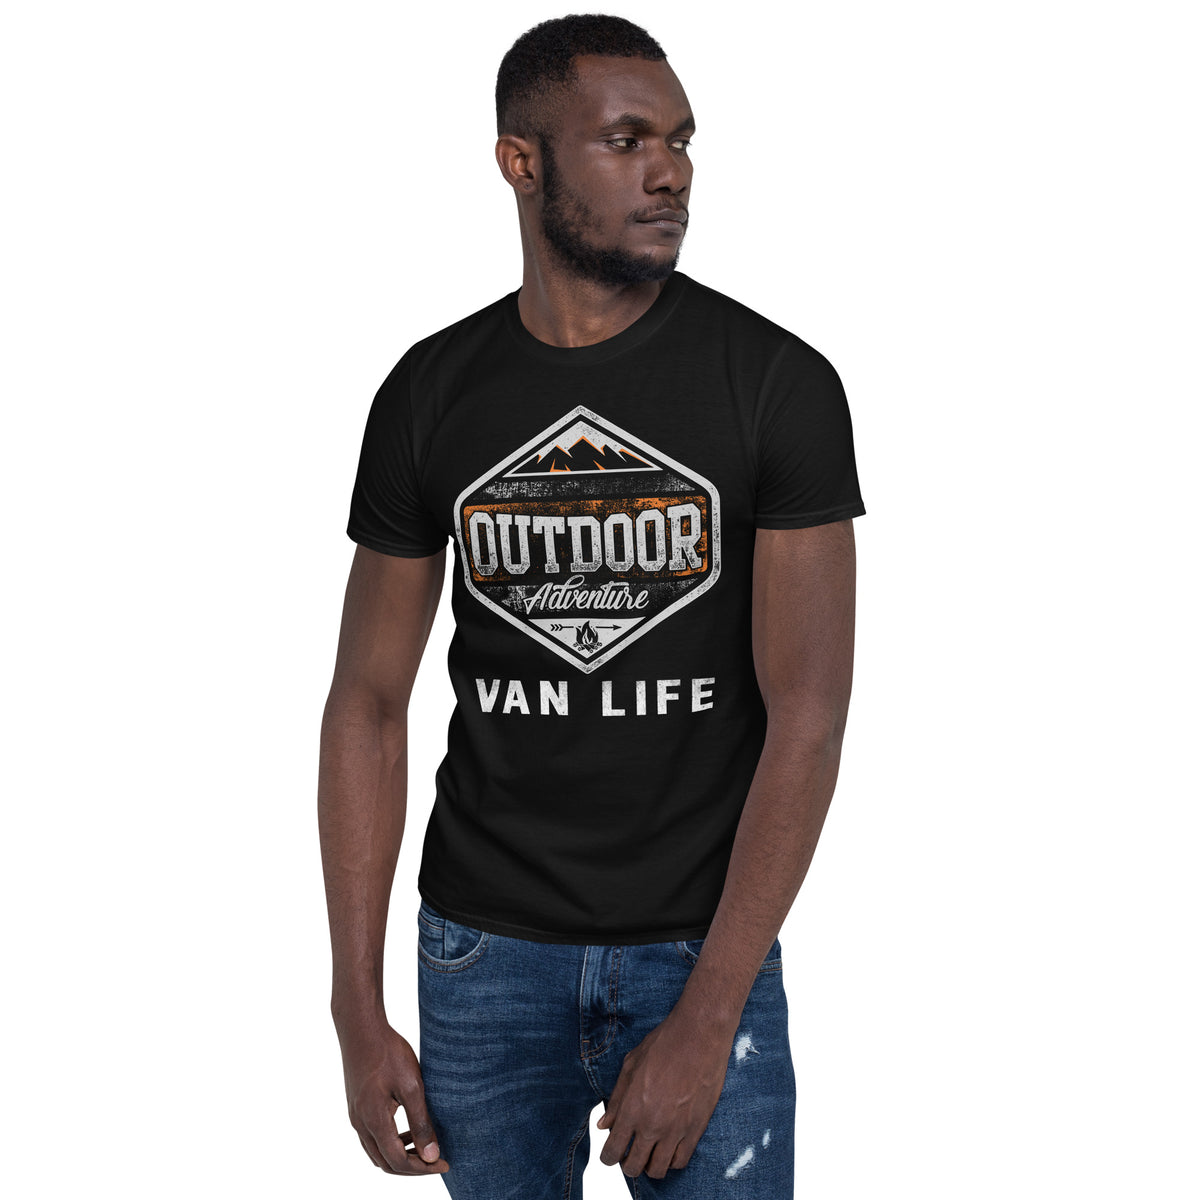 T-Shirt Van-Life Motiv " Outdoor Campervan"